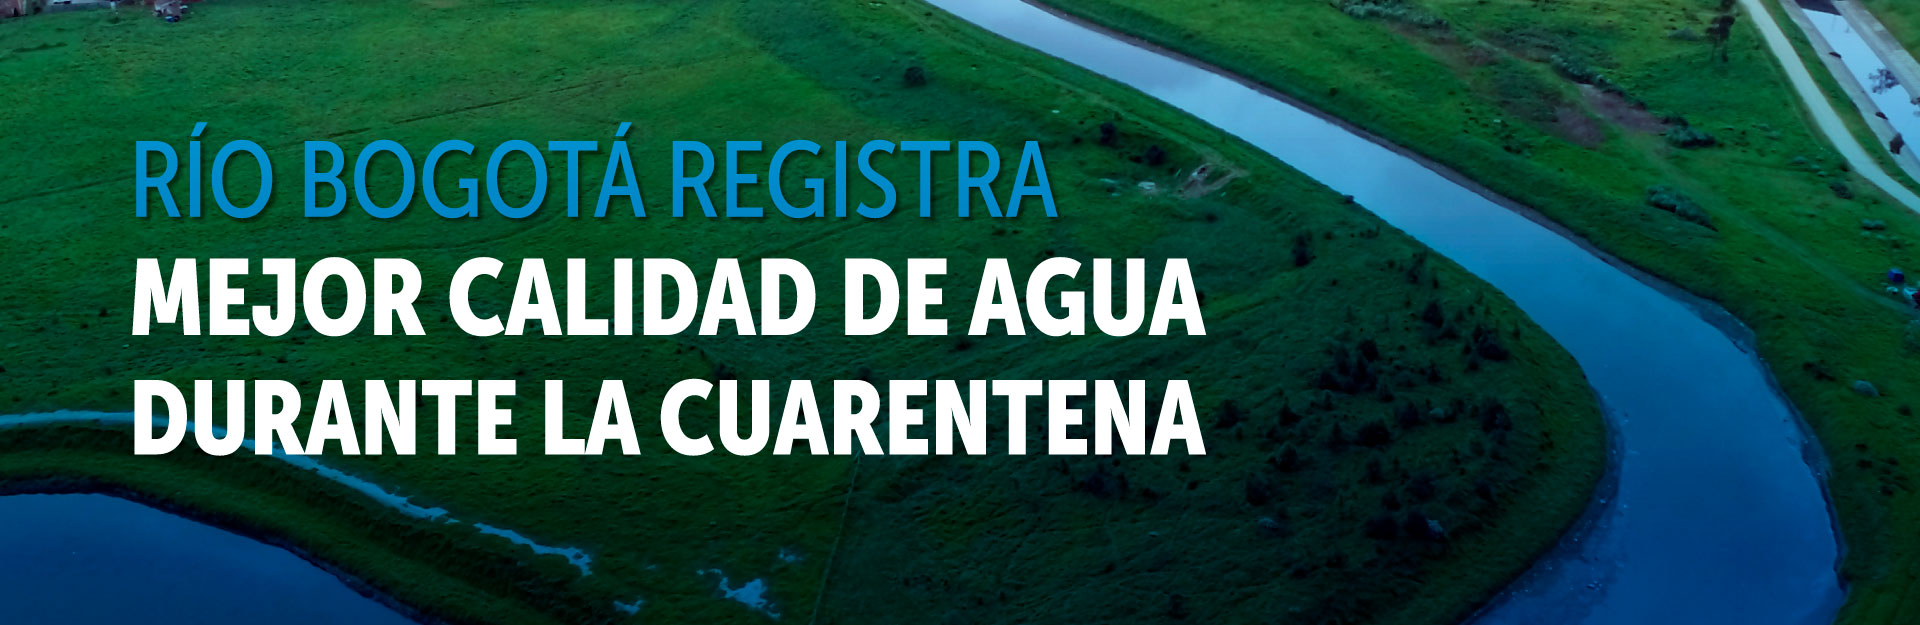 Río Bogotá registra mejor calidad de agua durante la cuarentena